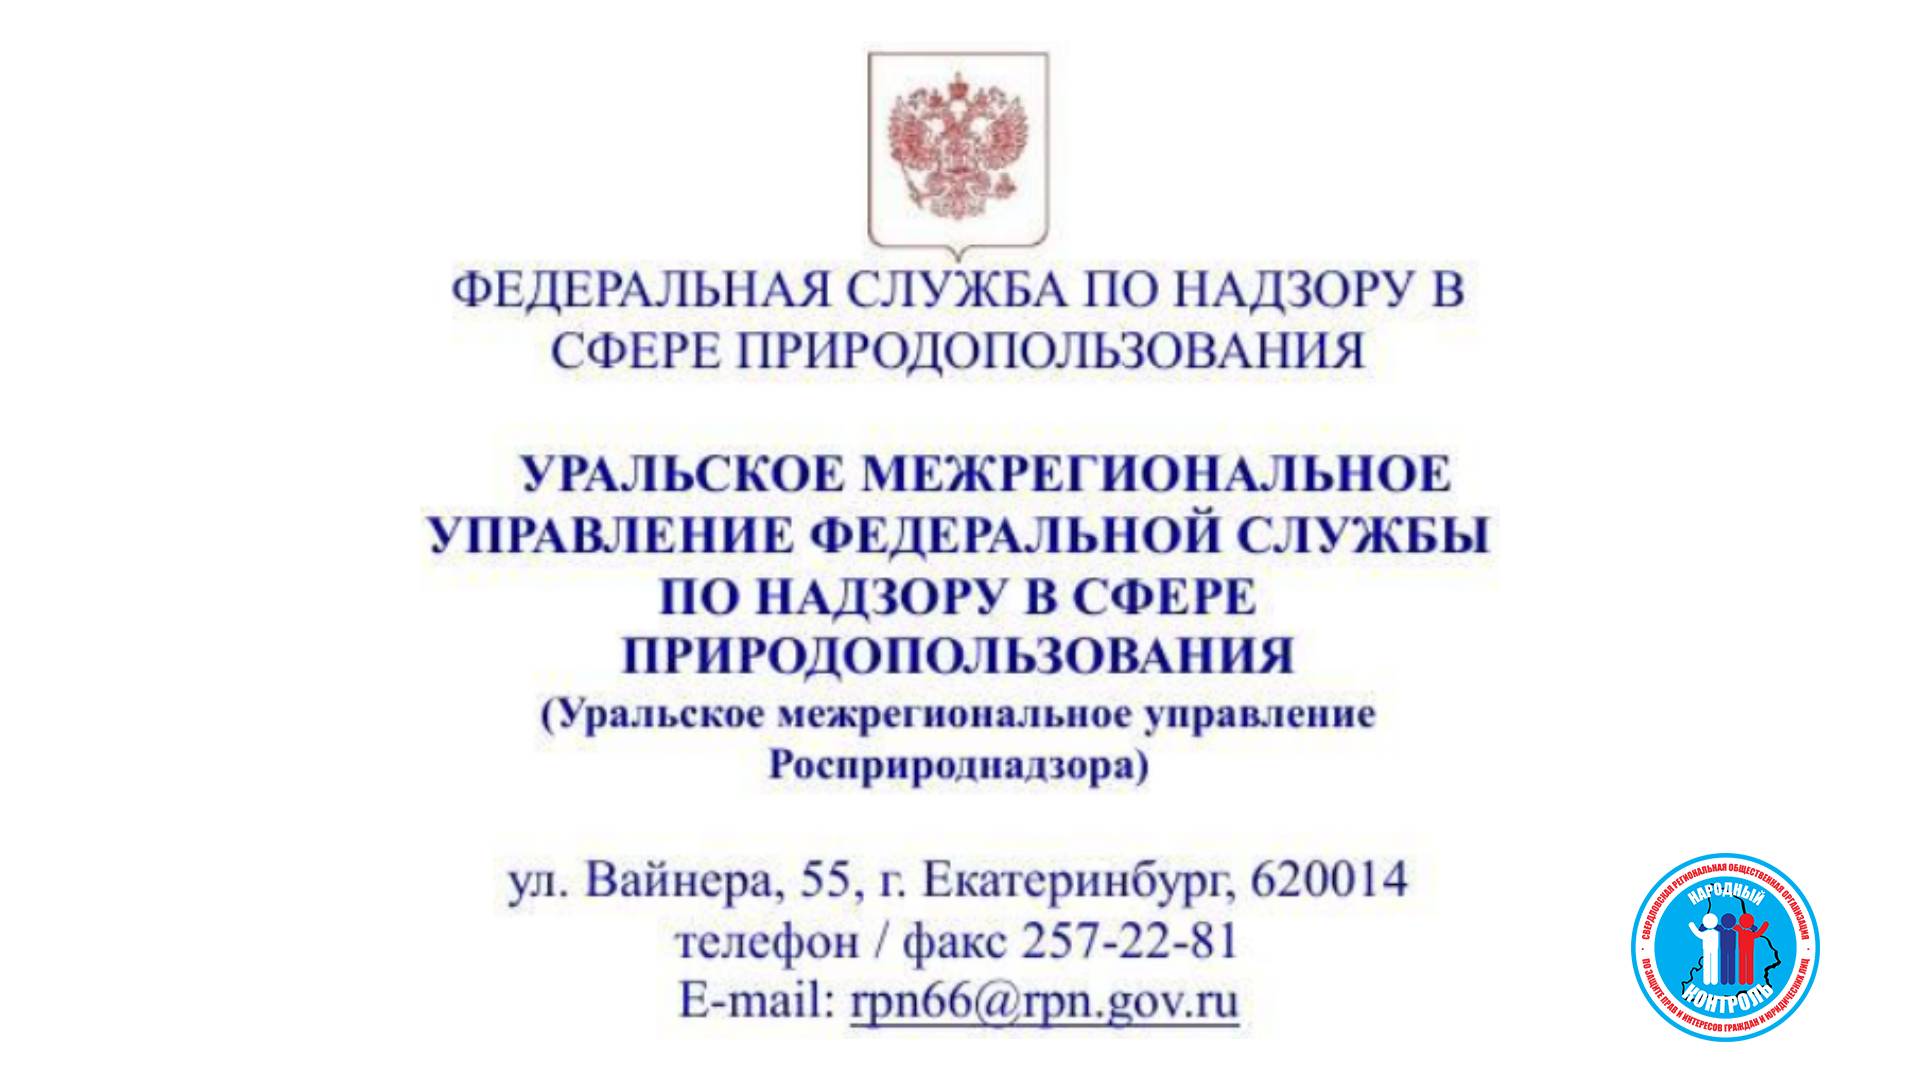 Уральское межрегиональное управление федеральной службы по надзору в сфере природопользования росприроднадзора